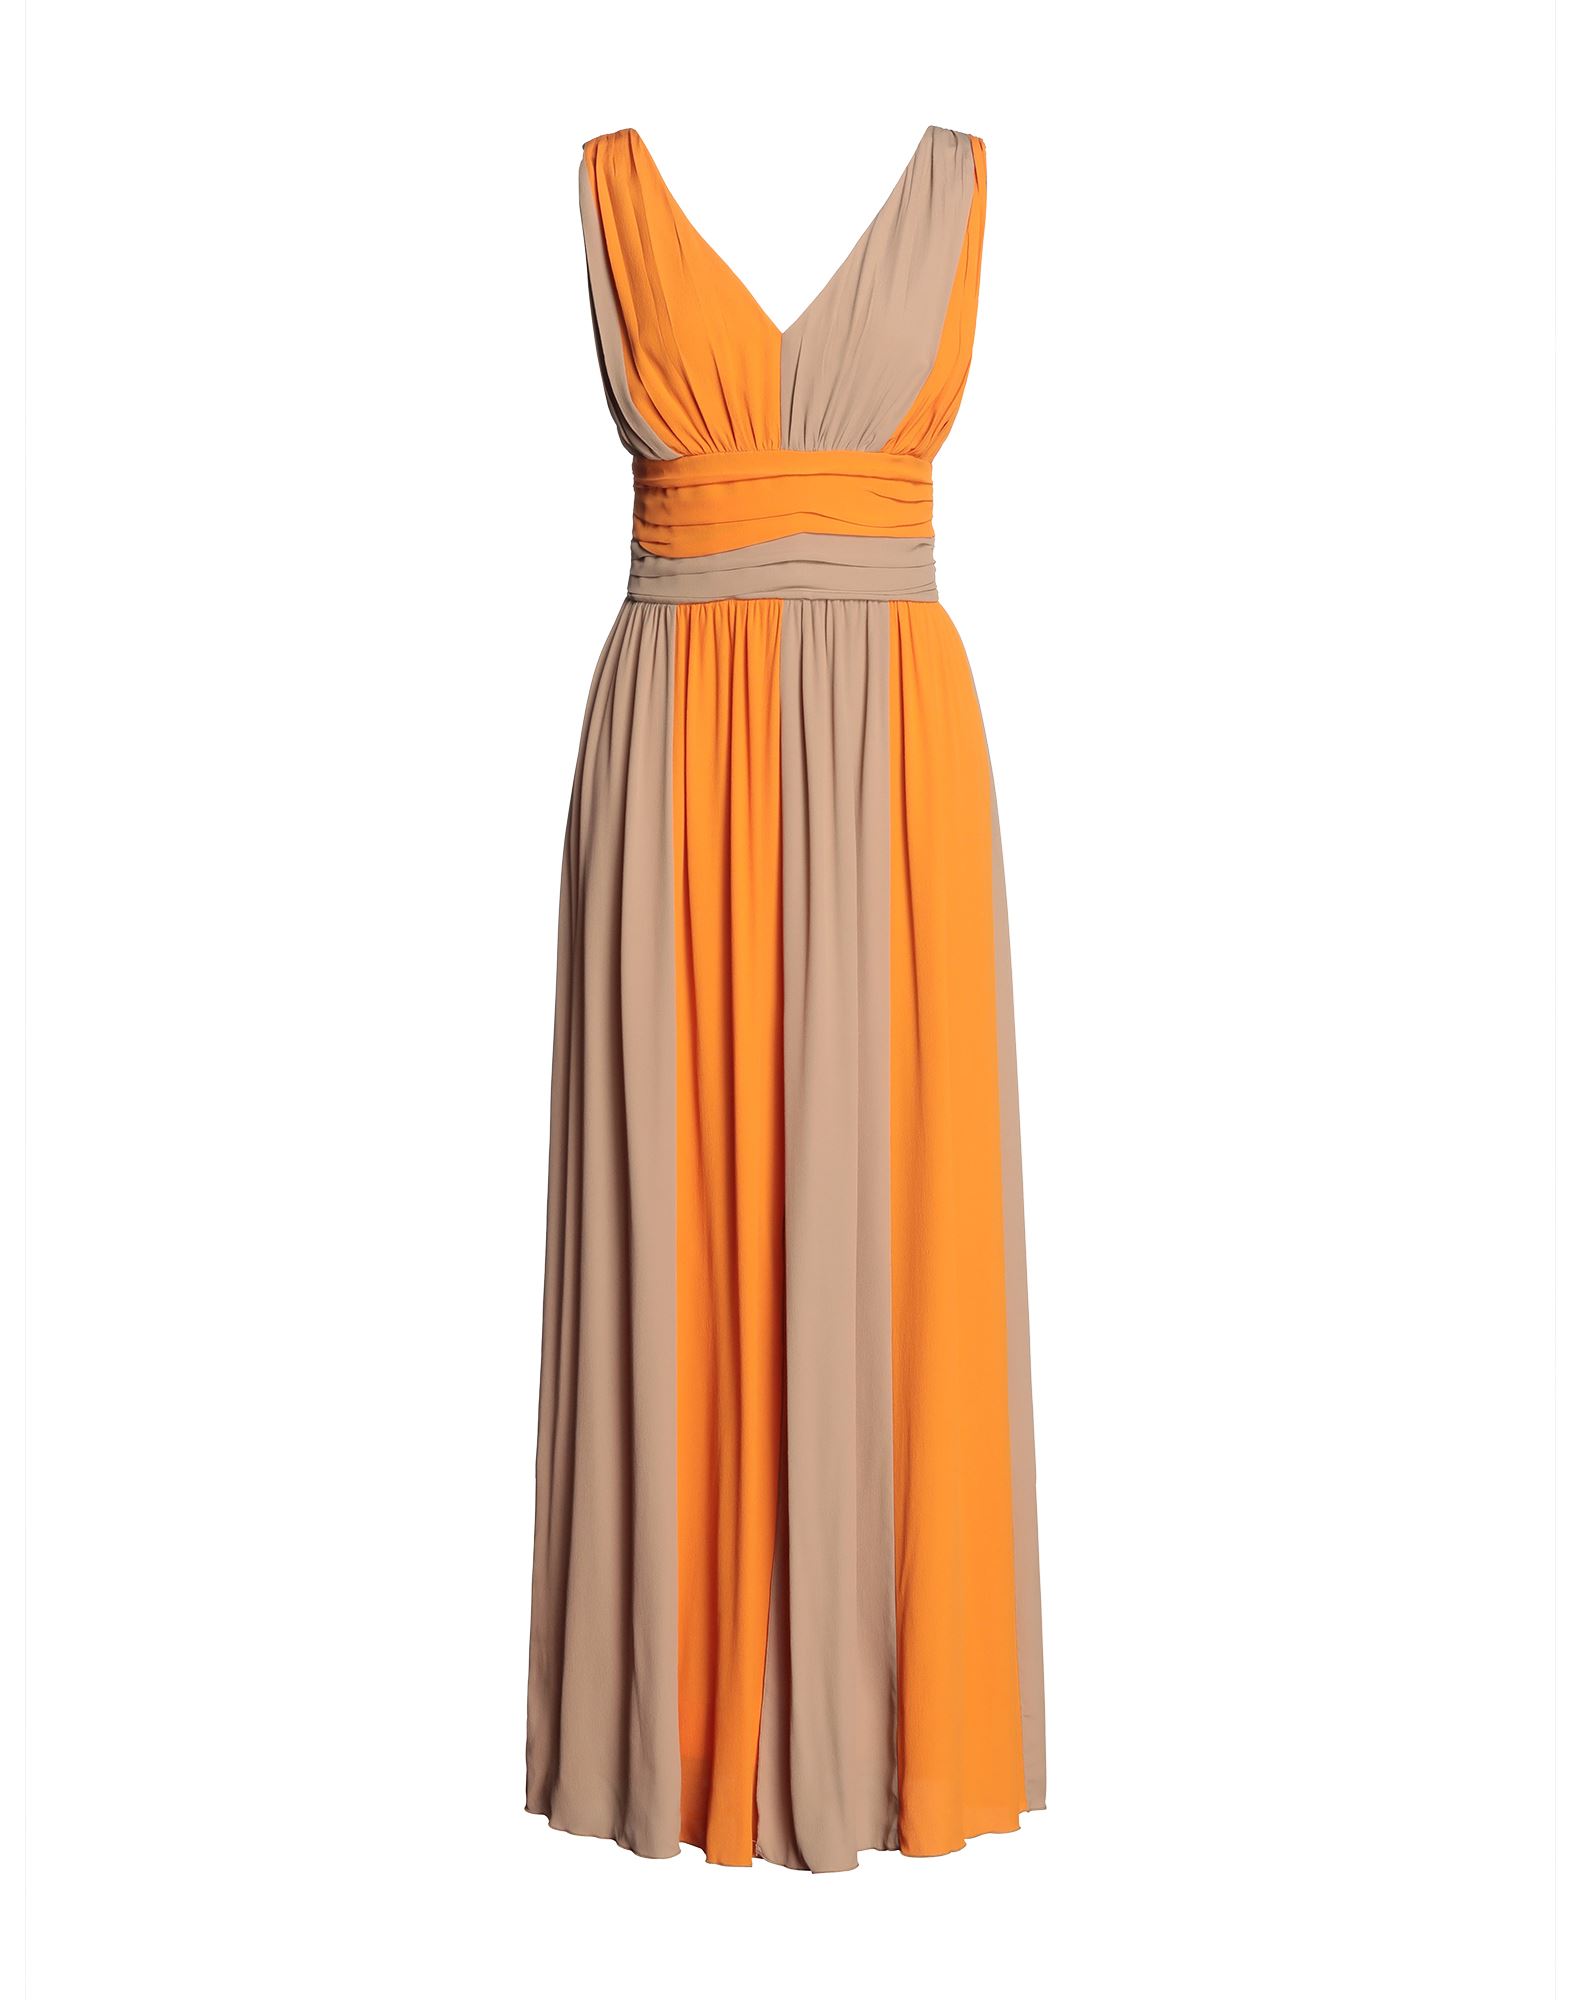 Carla G. Long Dresses In Orange